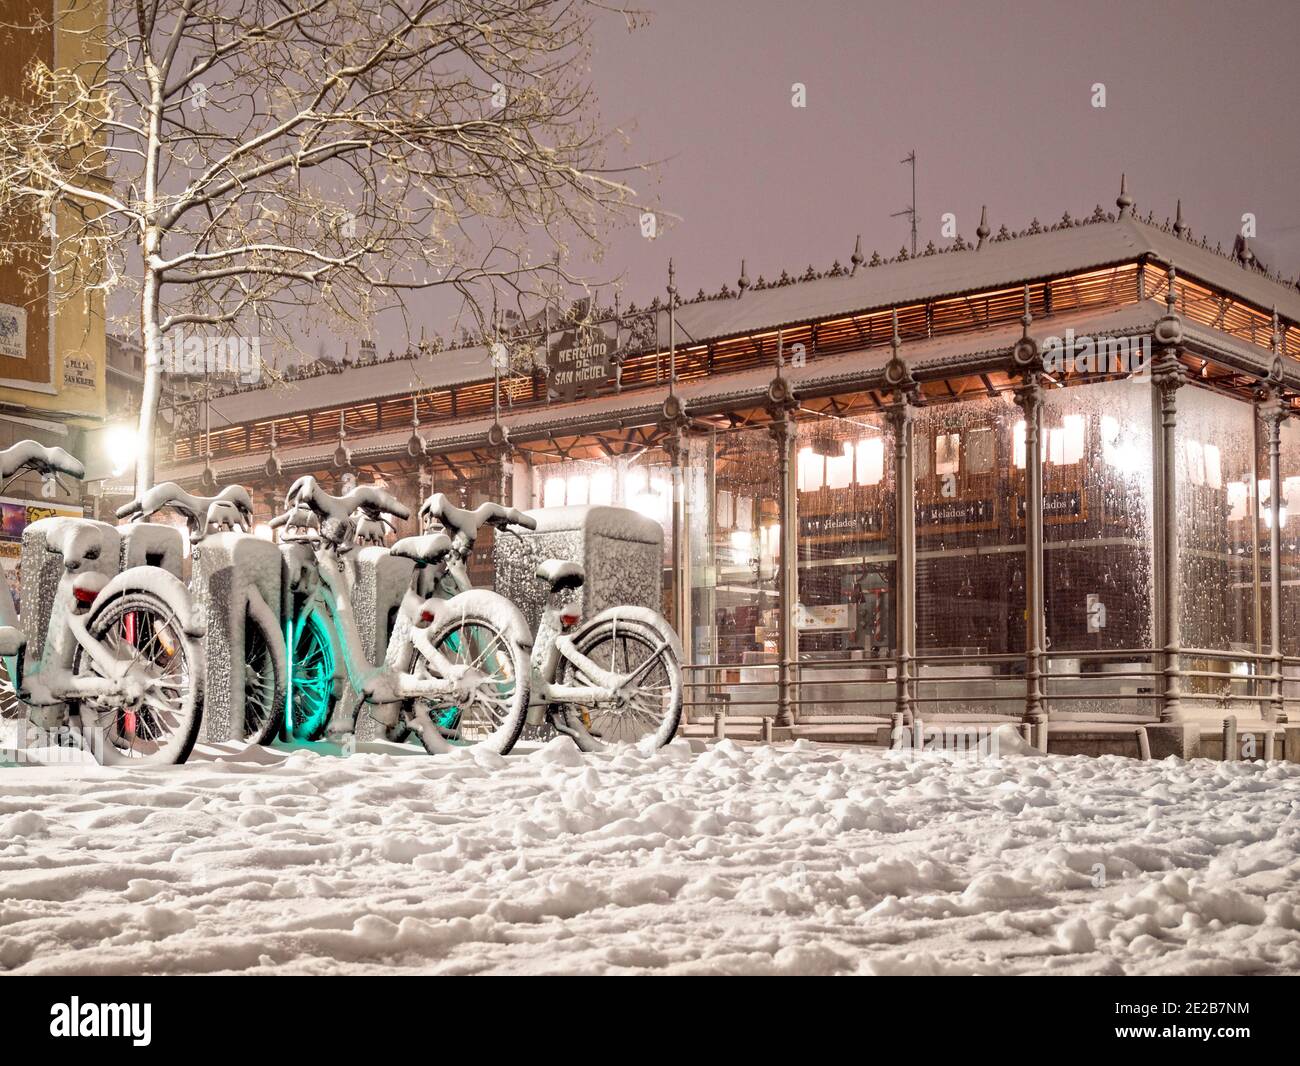 Bicicletas y Mercado de San Miguel nevado. Madrid. Espagne Banque D'Images